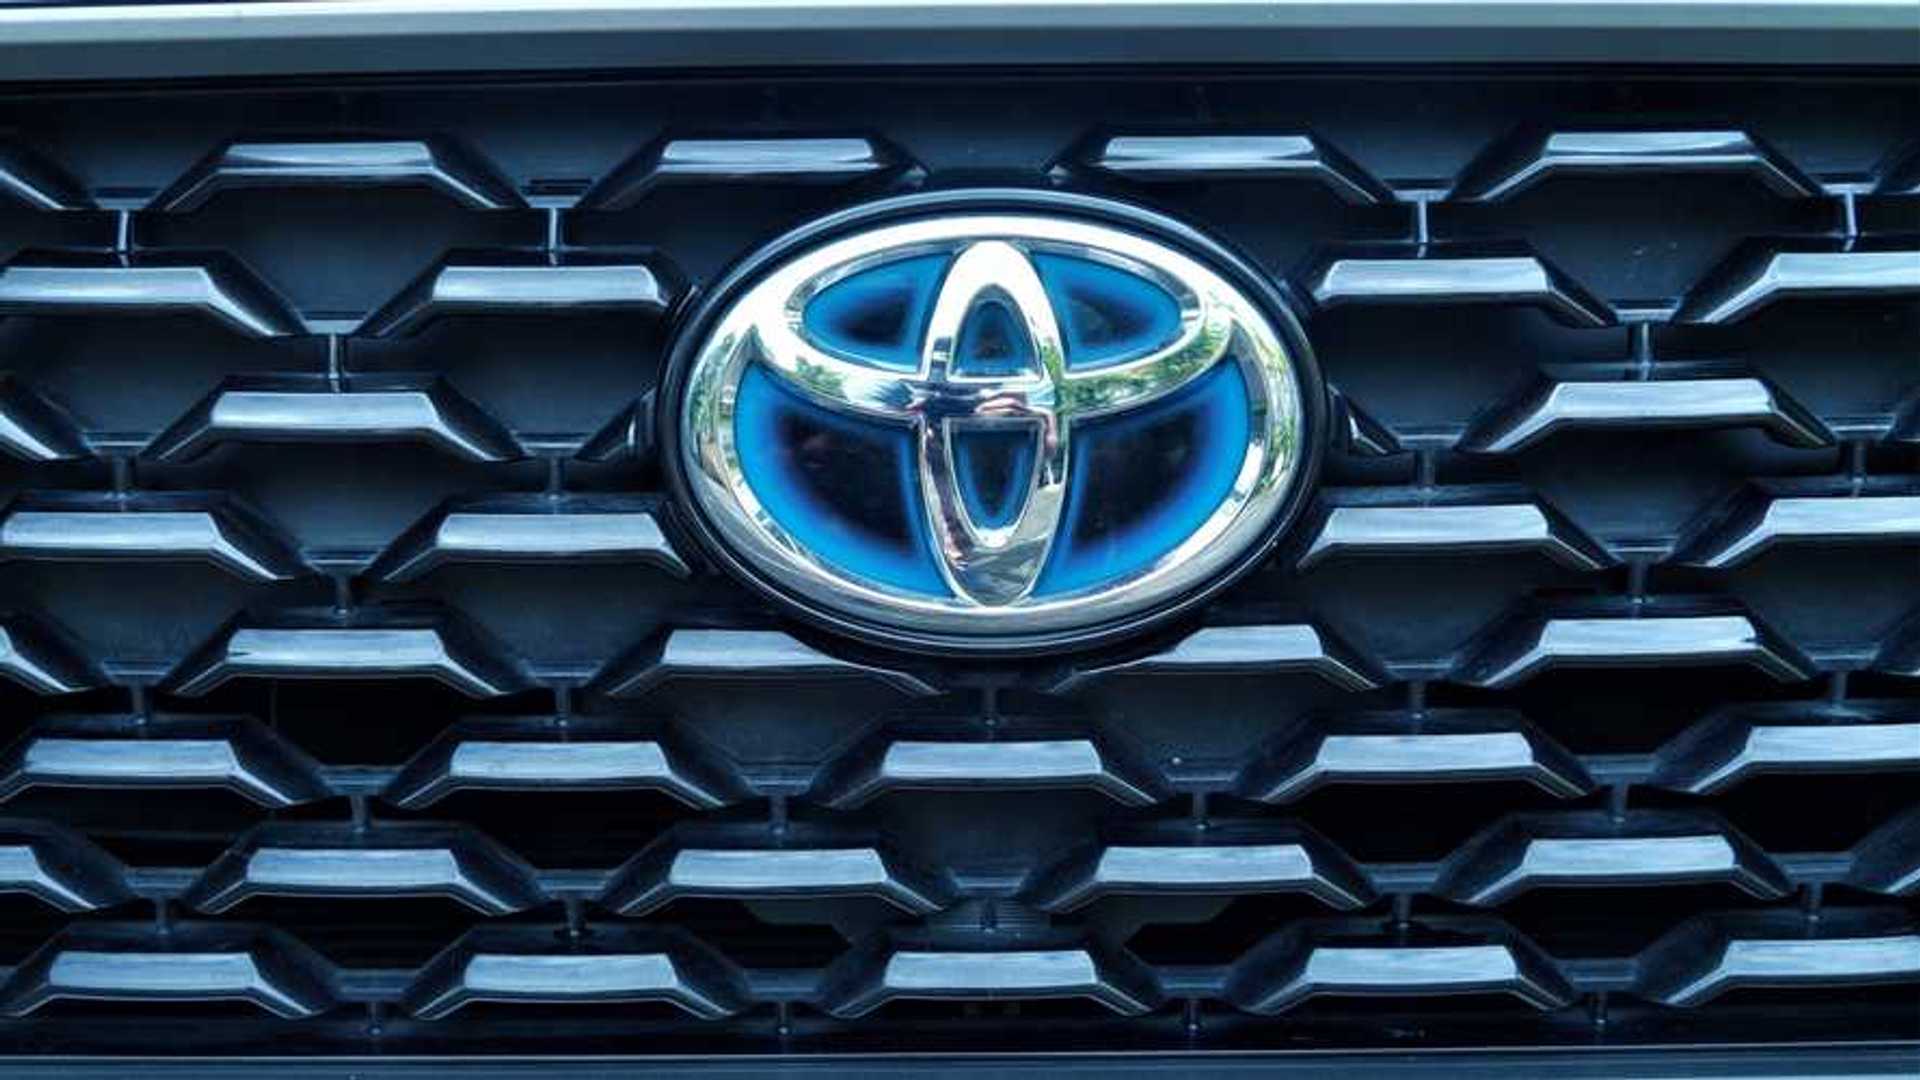 Mobil Toyota Keluaran Terbaru. Deretan Mobil Toyota Terbaru yang Hadir Tahun 2021